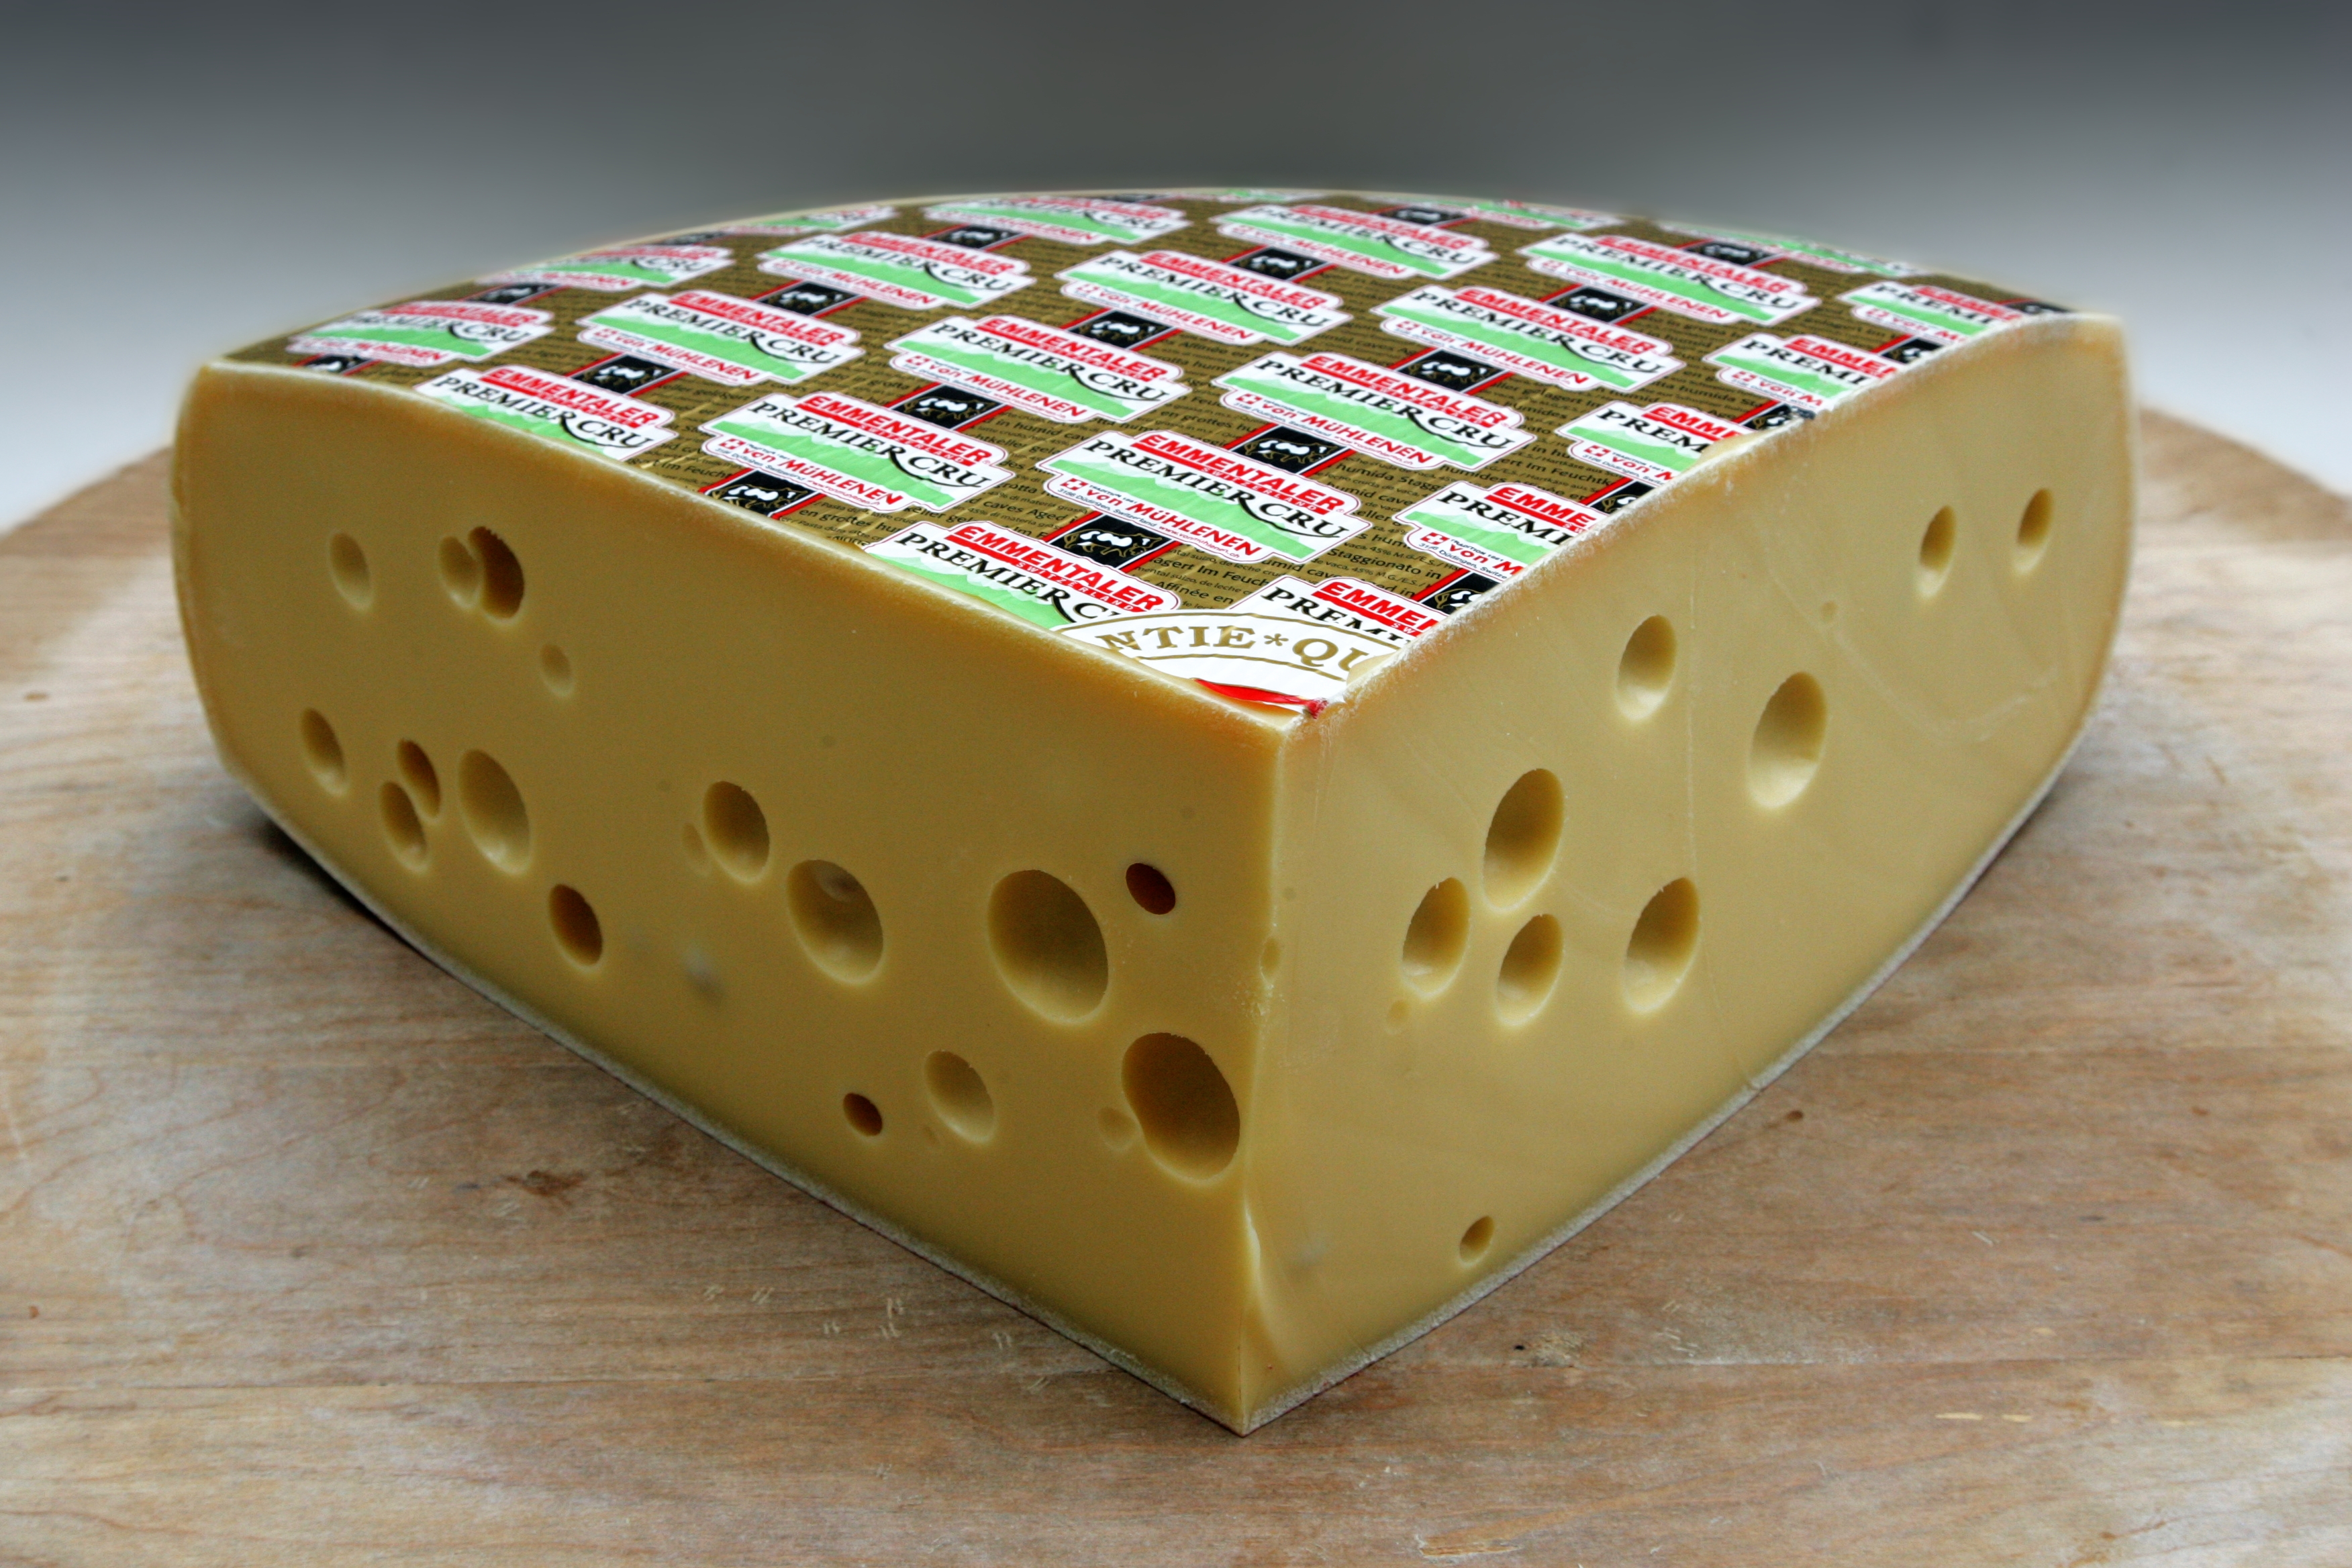 ▷🥇 Emmental cheese | mild | super taste | 100 % hay milk